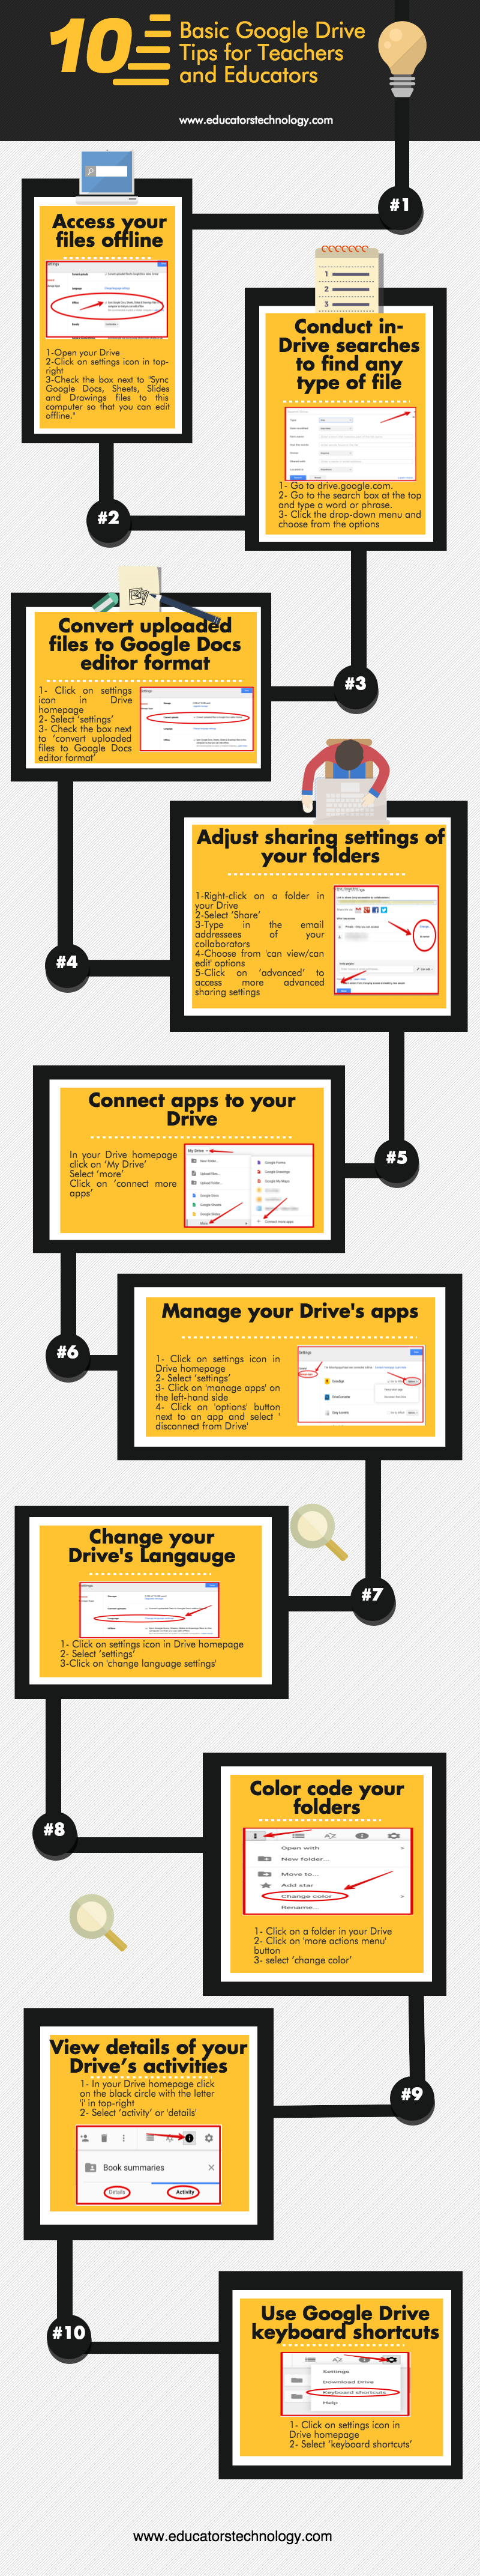 Consejos de Google Drive para profesores